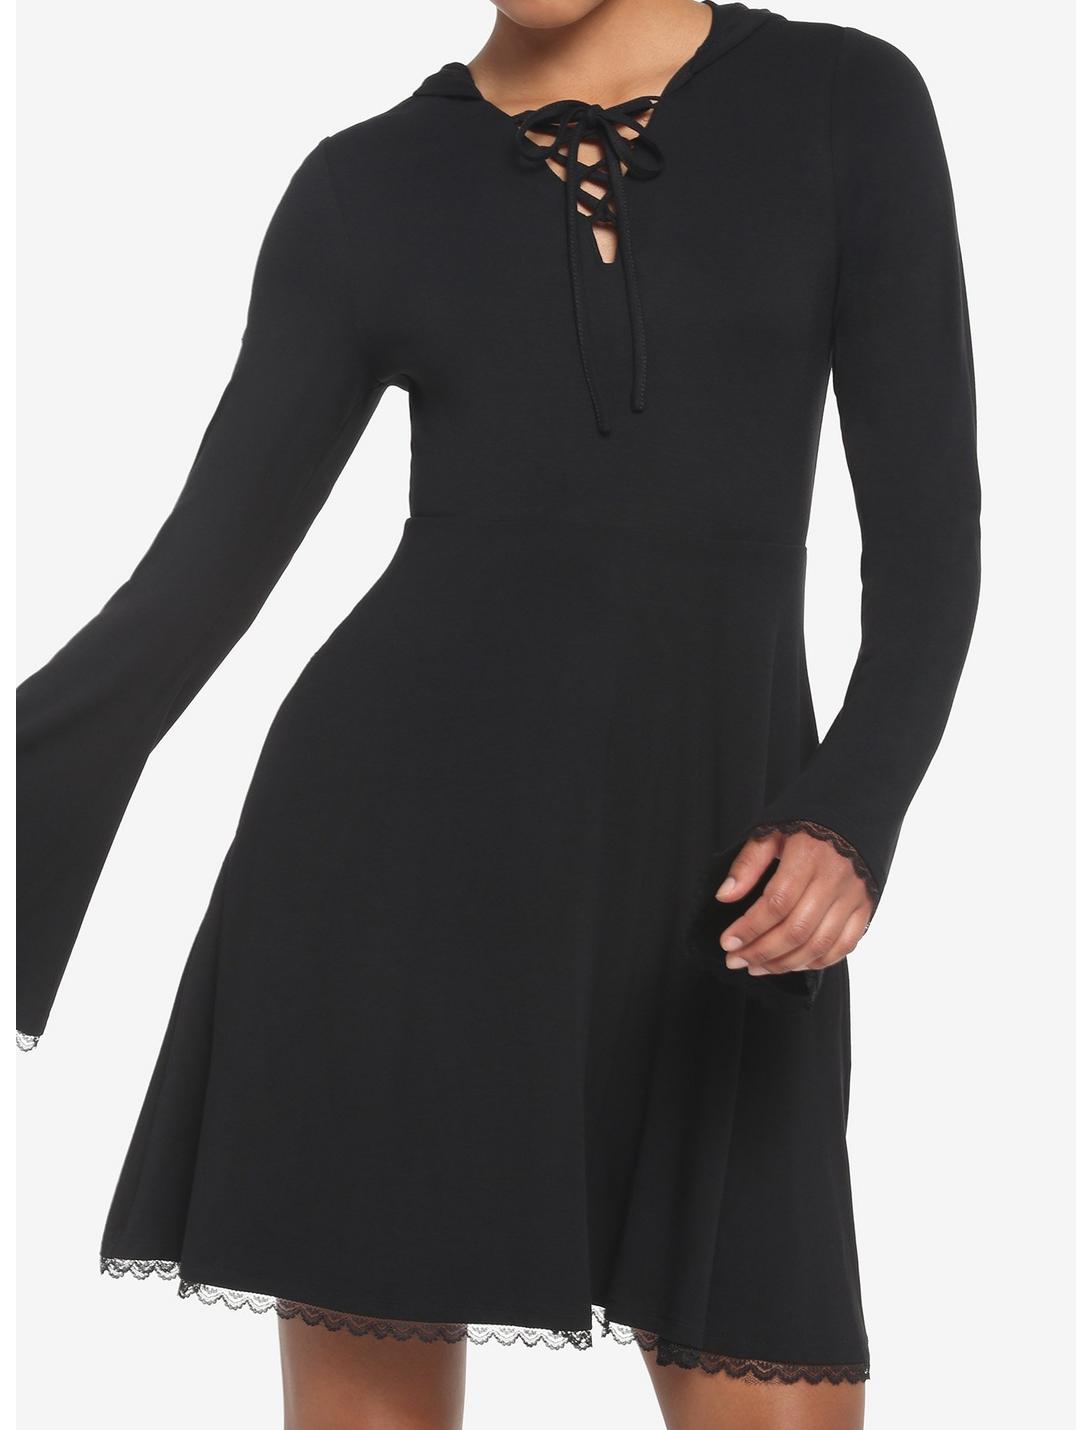 Black Lace-Up Front Hooded Dress, BLACK, hi-res